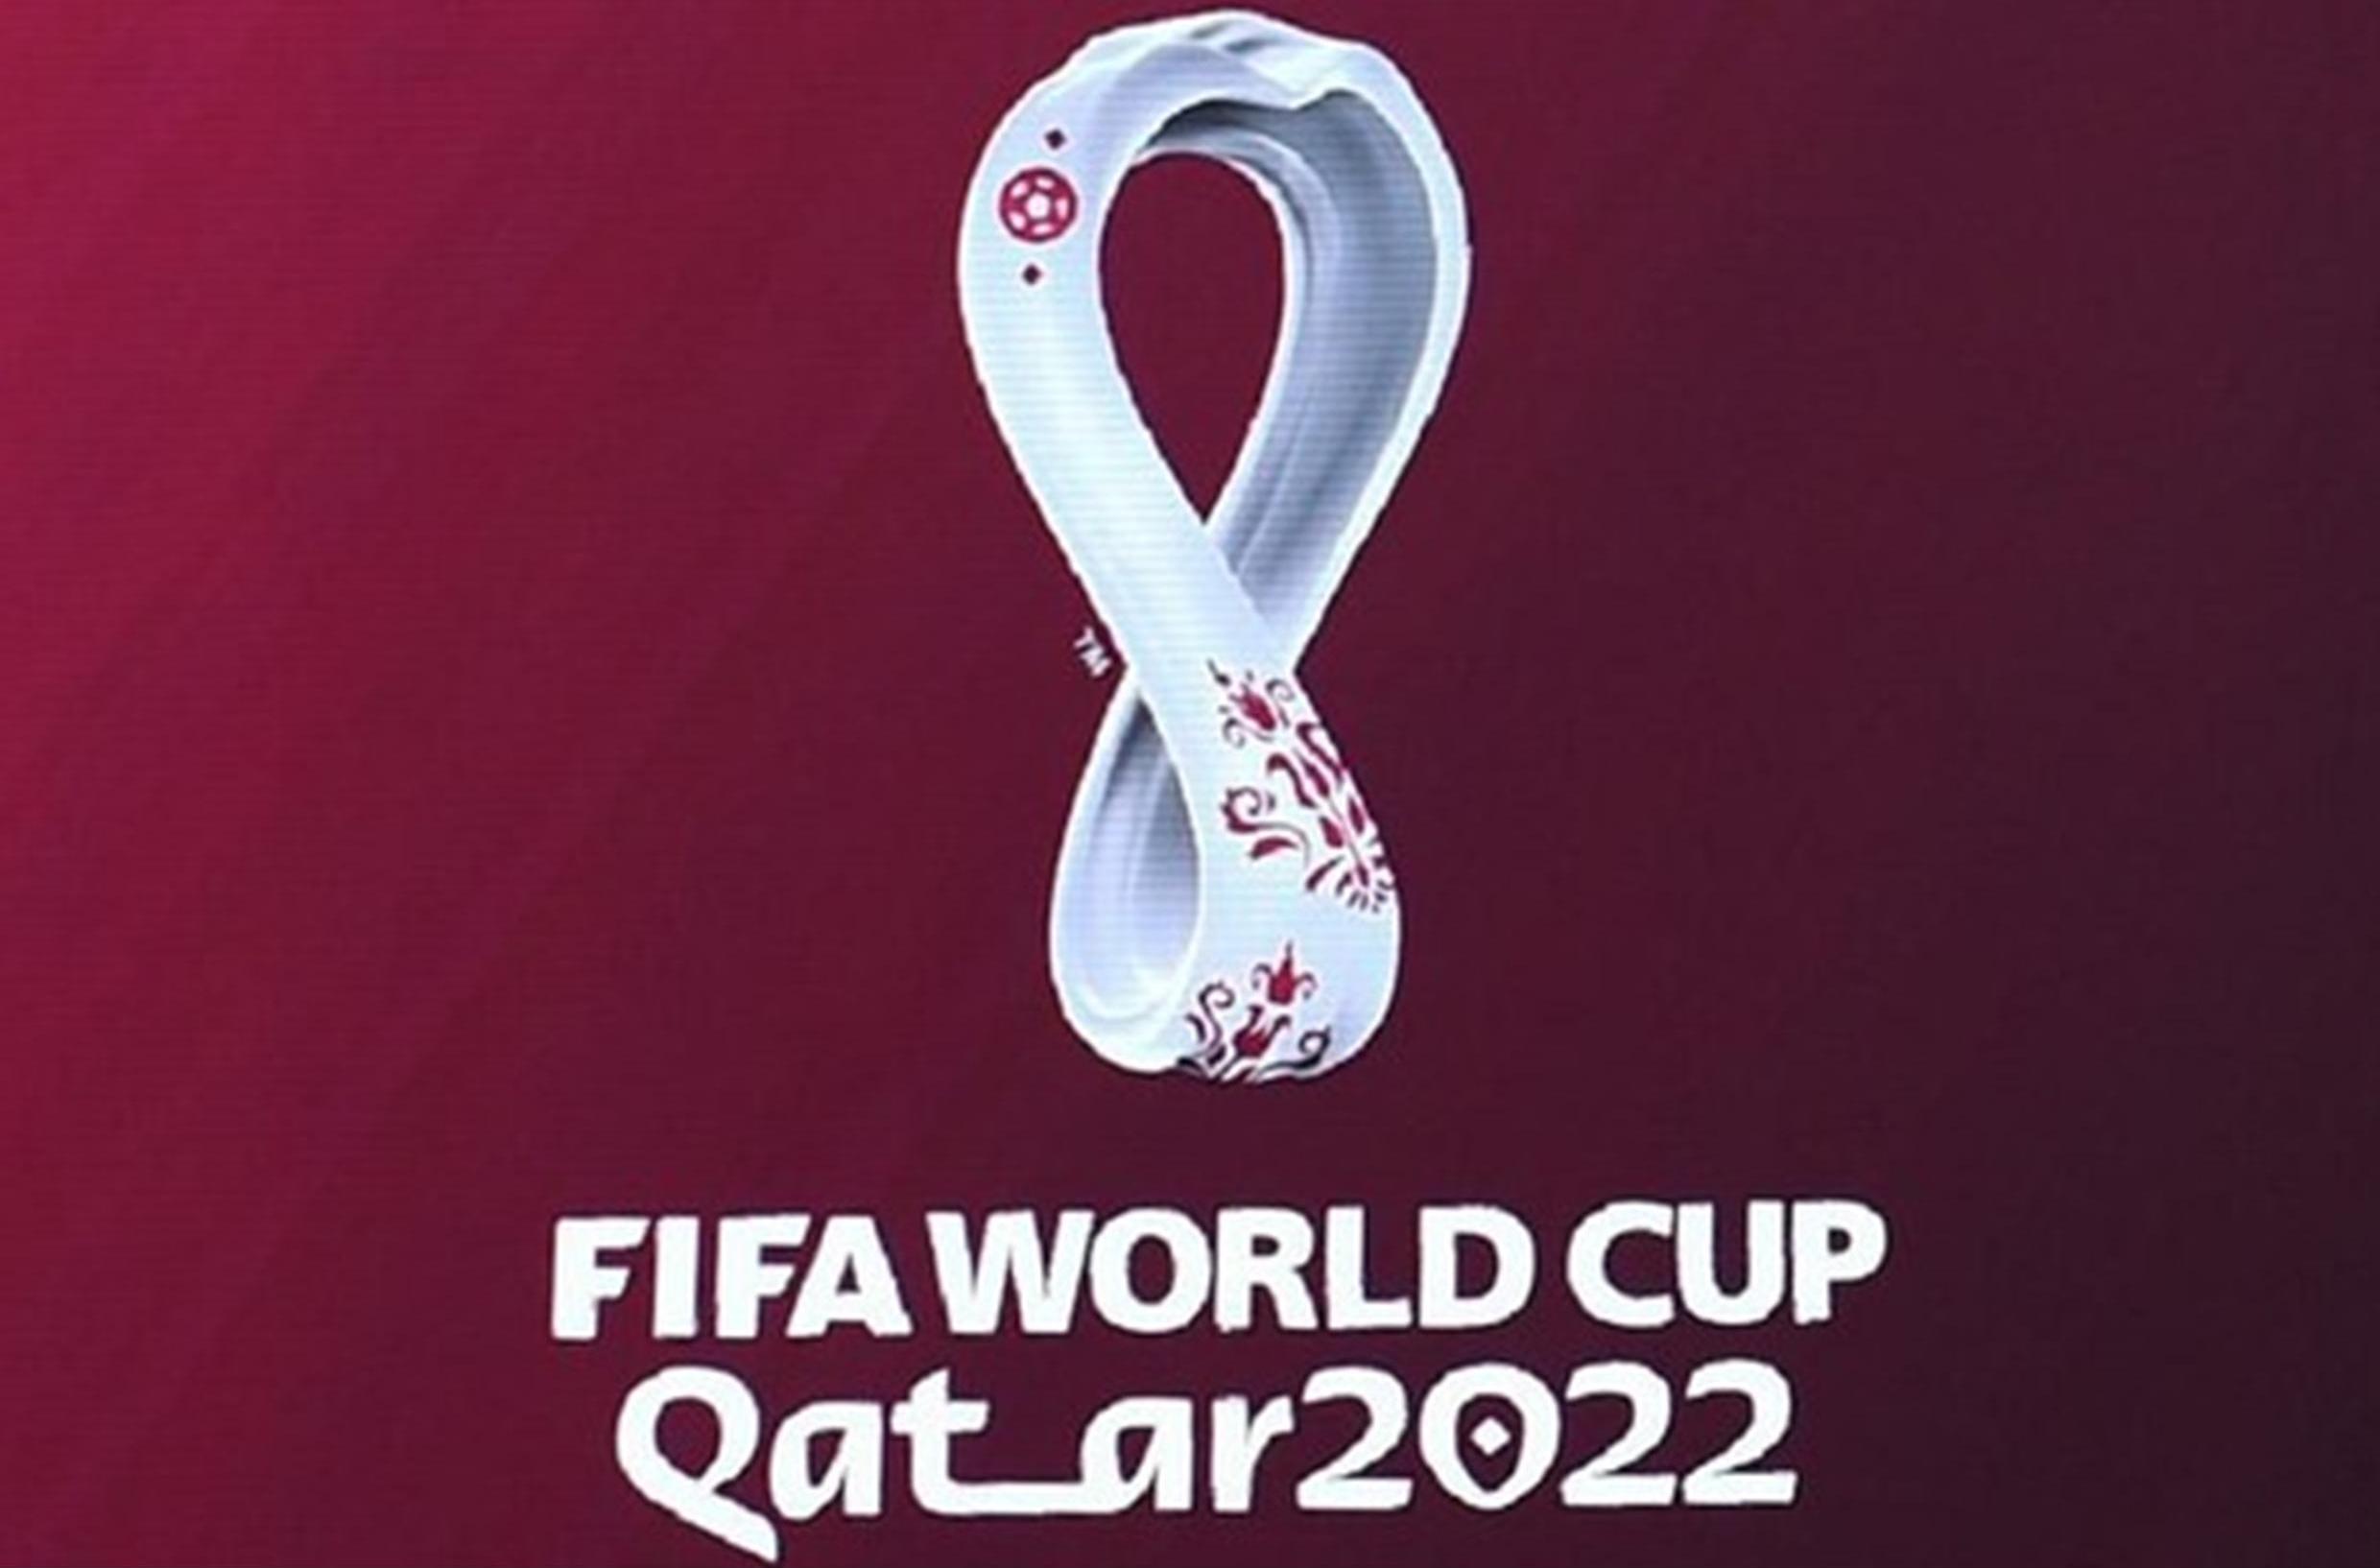 Piala Dunia 2022 Qatar per 23 November 2022: Pertandingan, Klasemen dan Top Skor